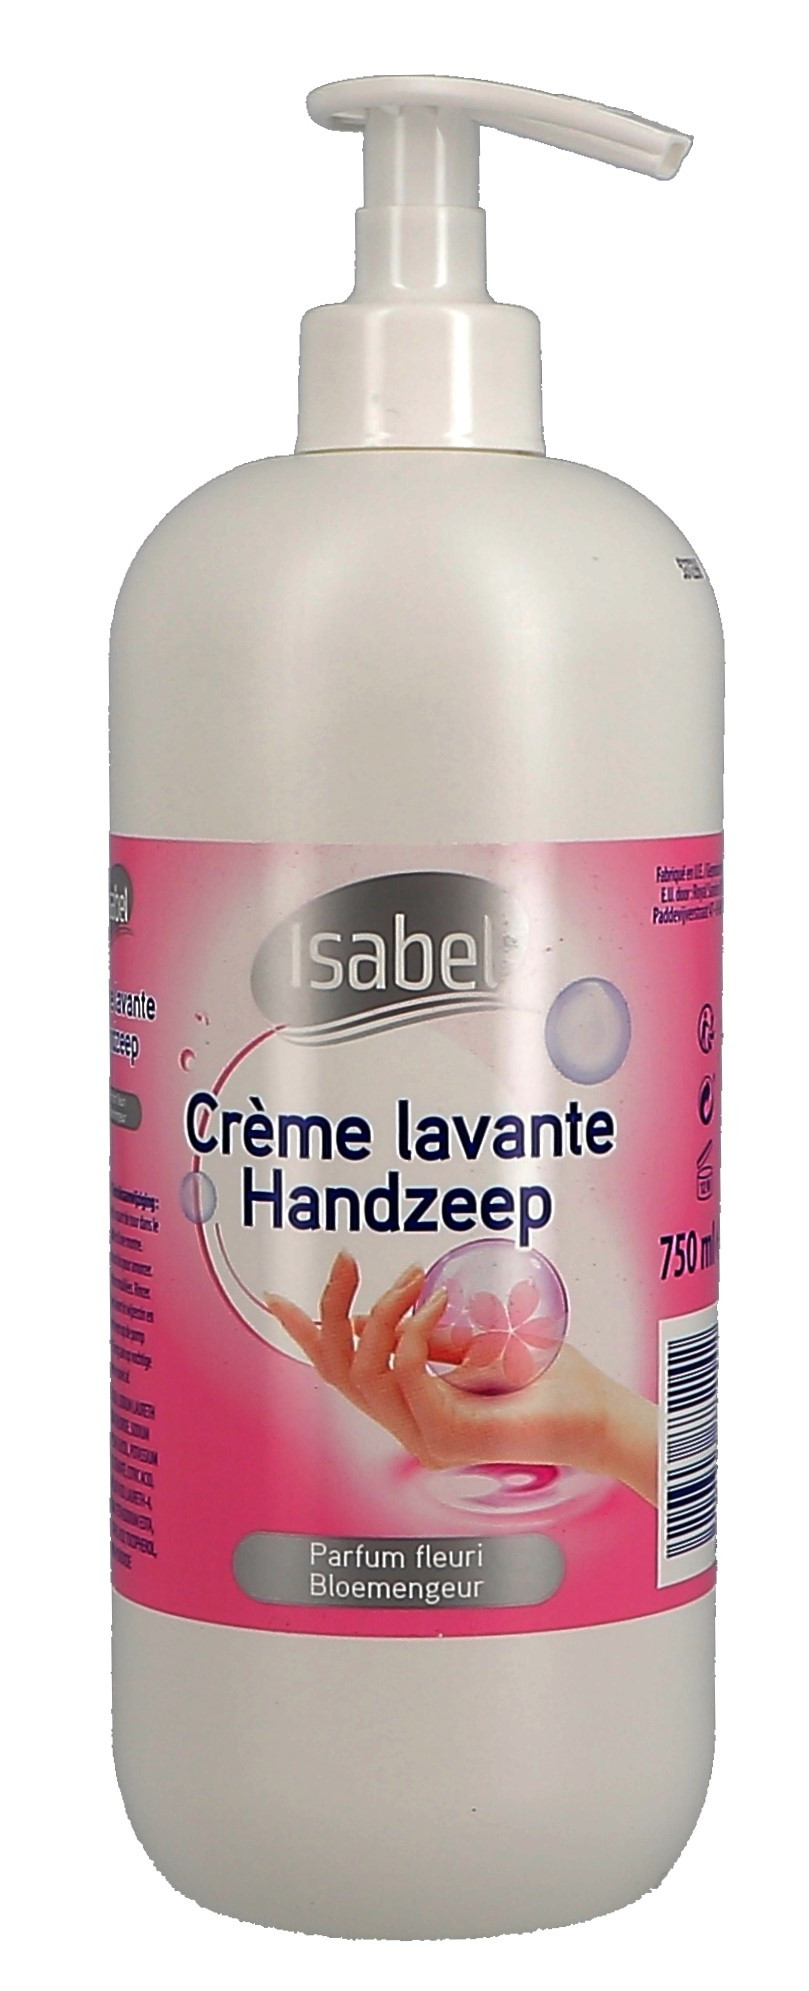 Isabel Handzeep + pomp 750ml (Handafwasproducten)